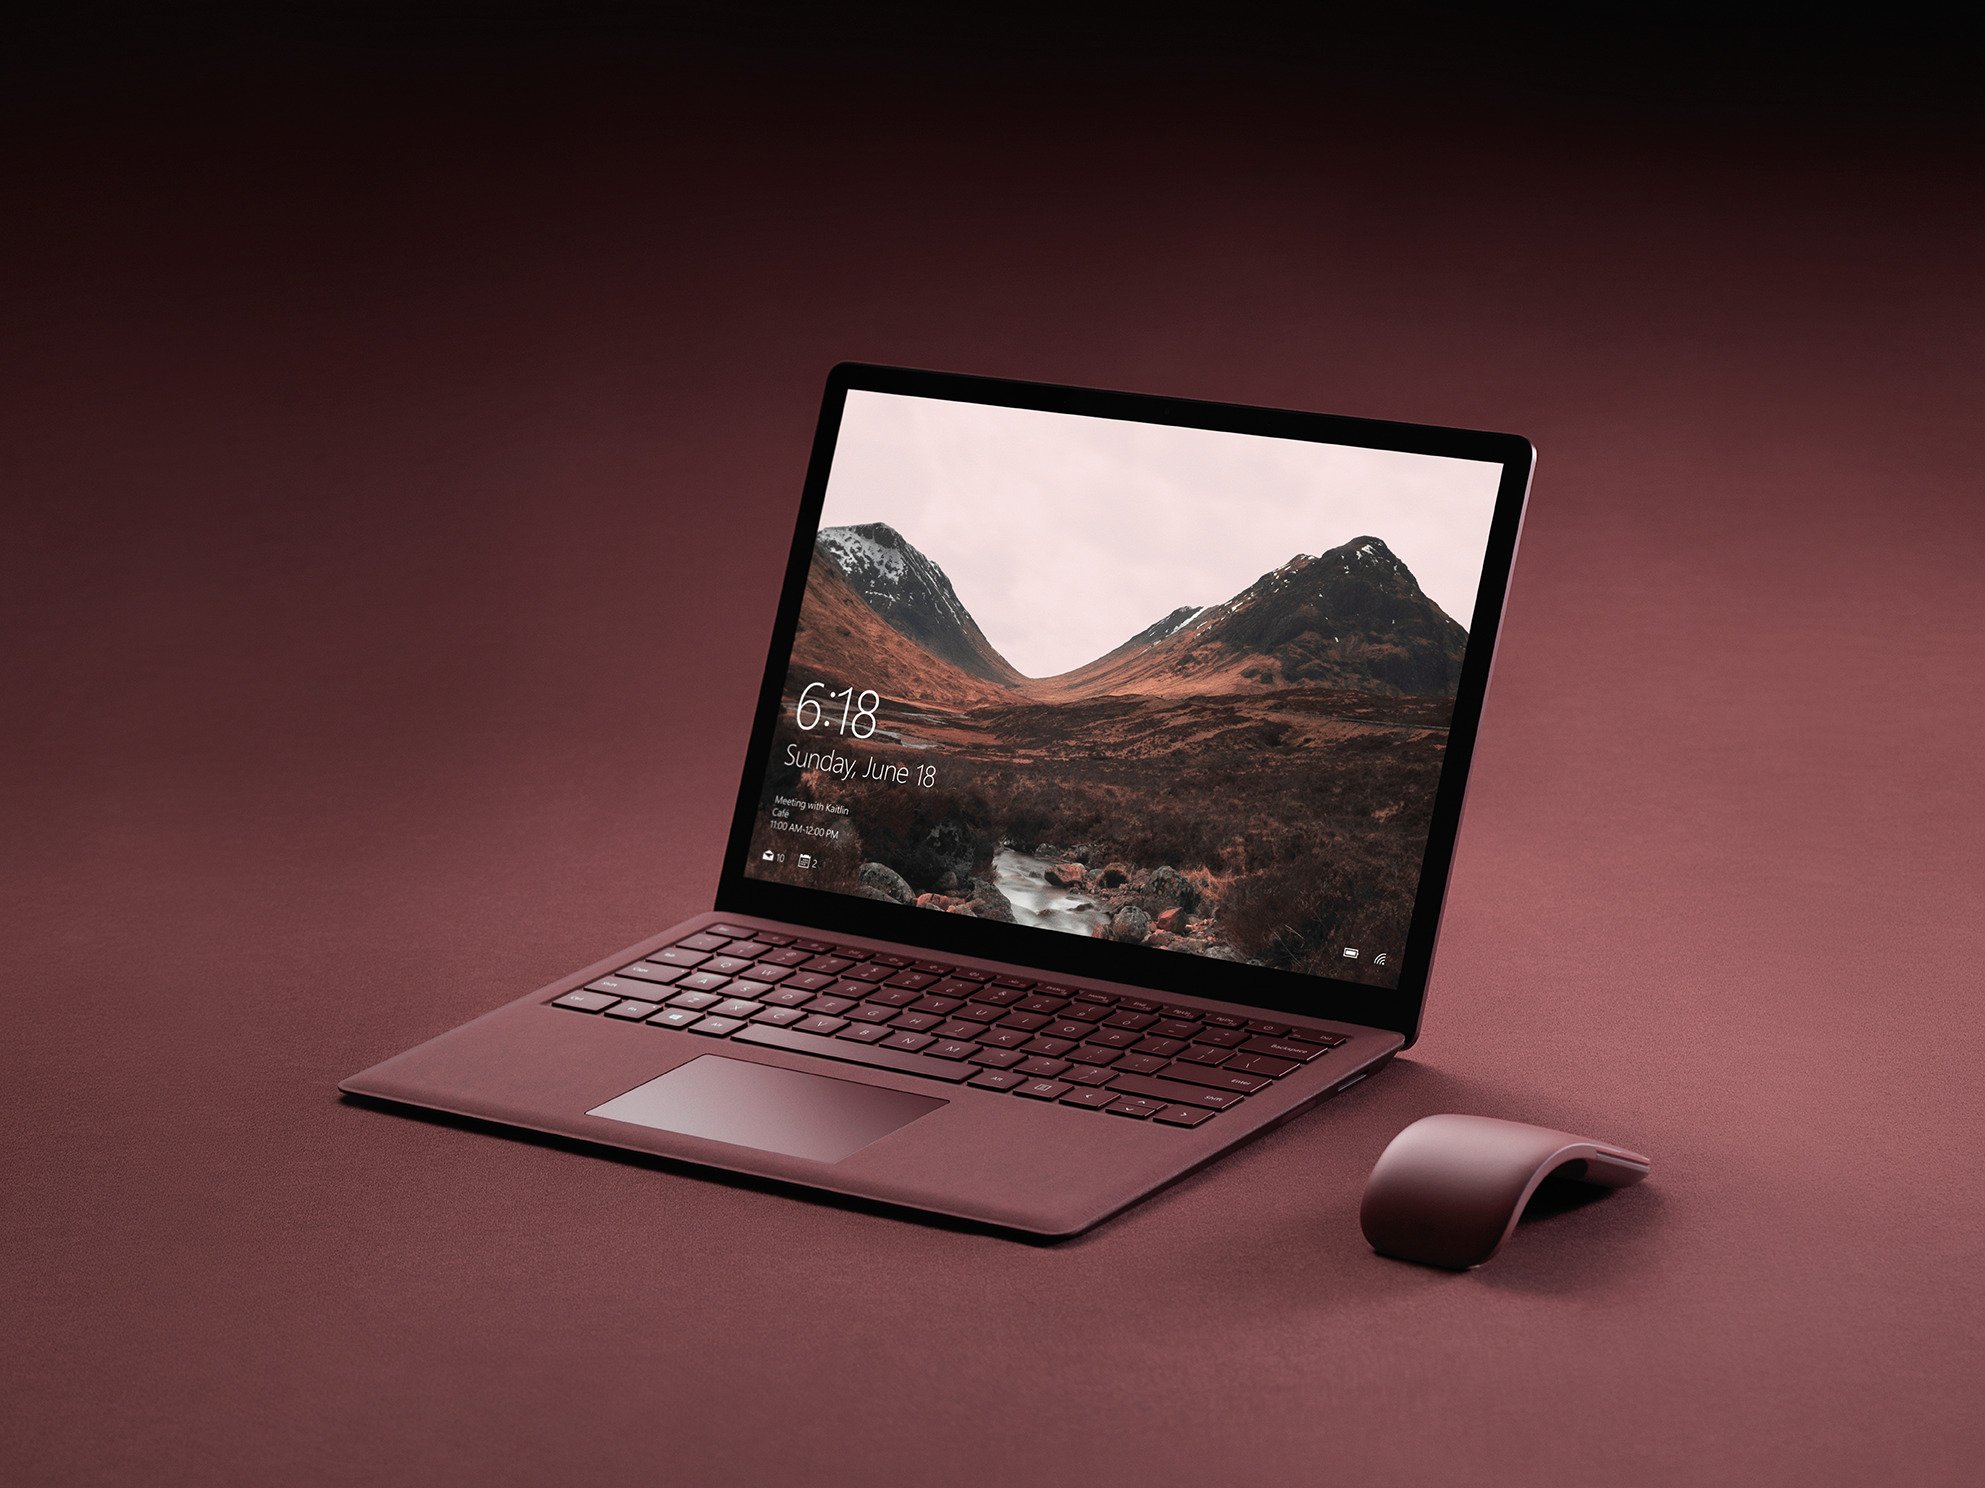 ｢Surface Laptop｣のCore i7搭載モデル、日本でも販売開始へ